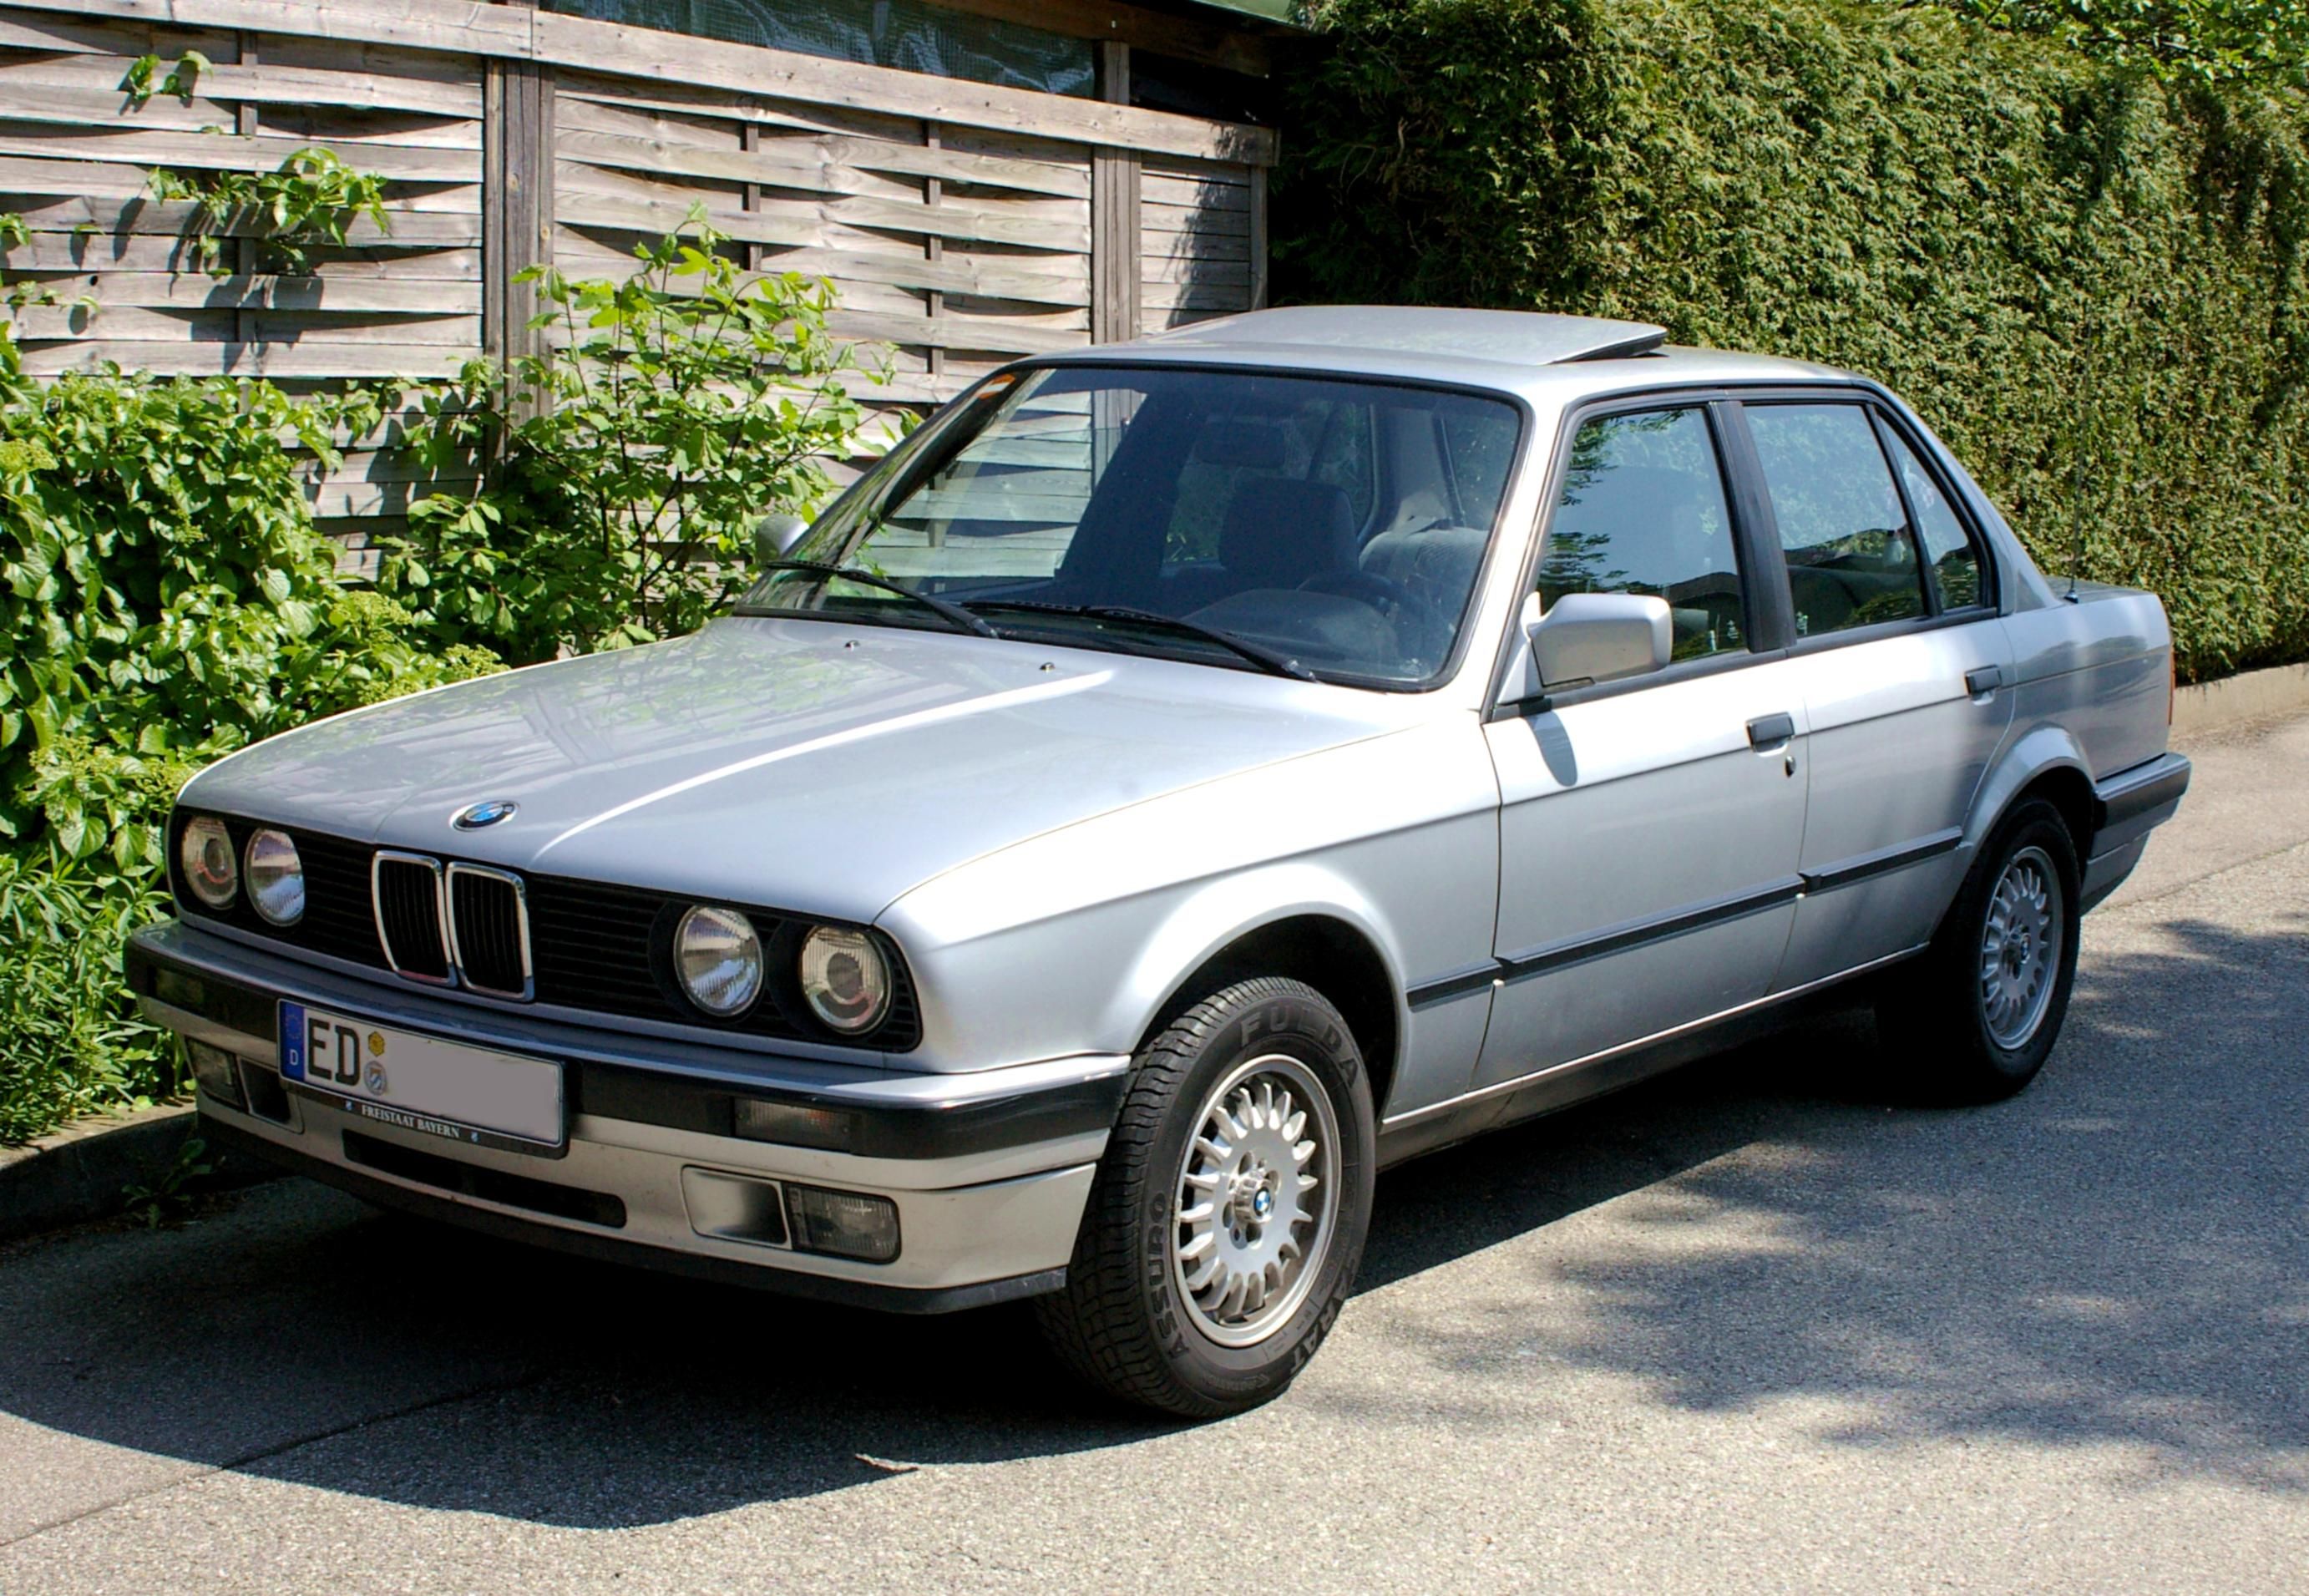 1985 BMW E30 325i via Wikimedia